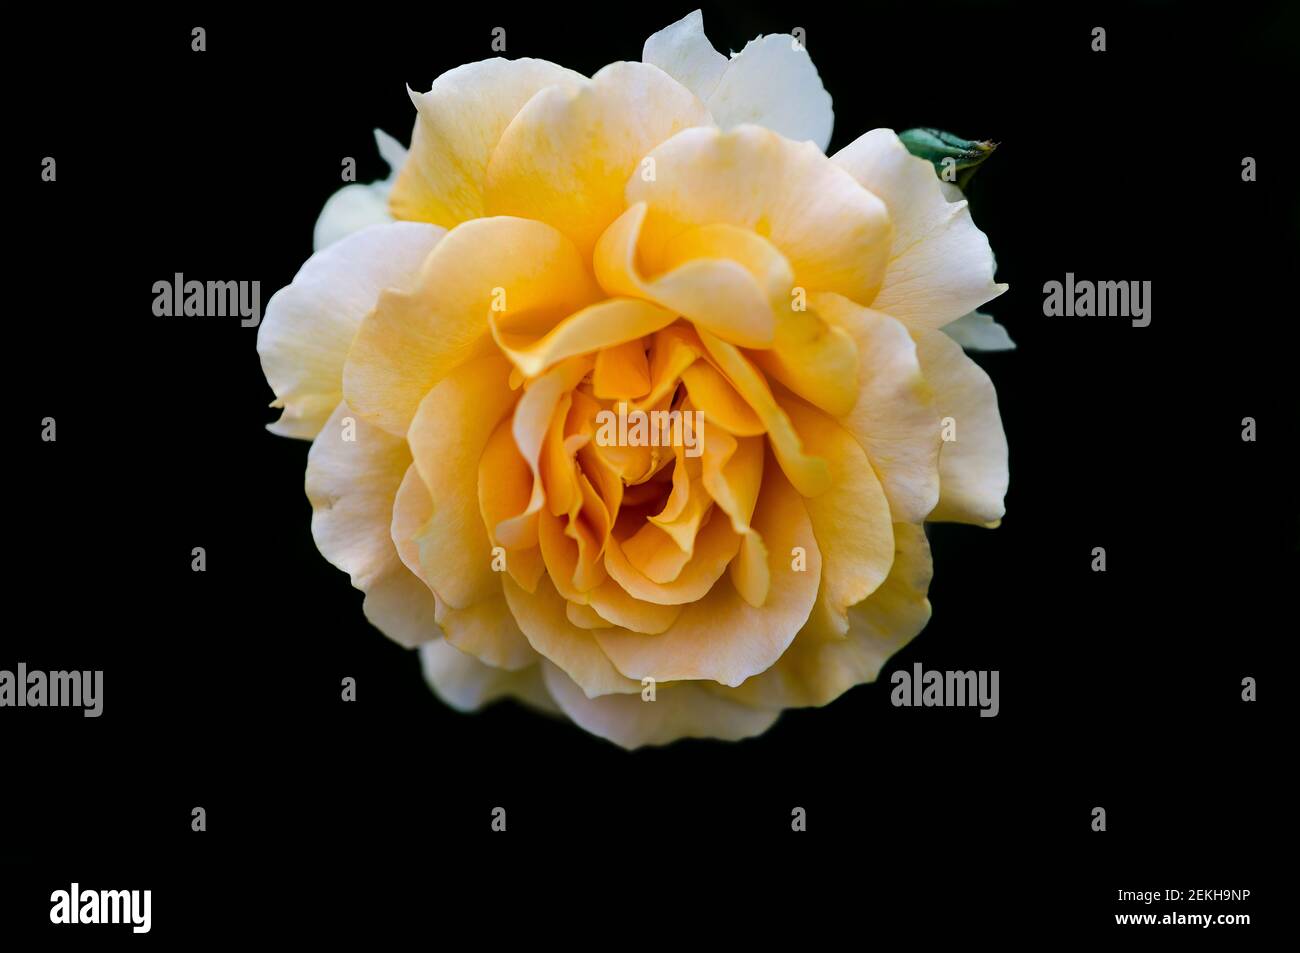 Gros plan de fleur rose jaune sur fond noir Banque D'Images